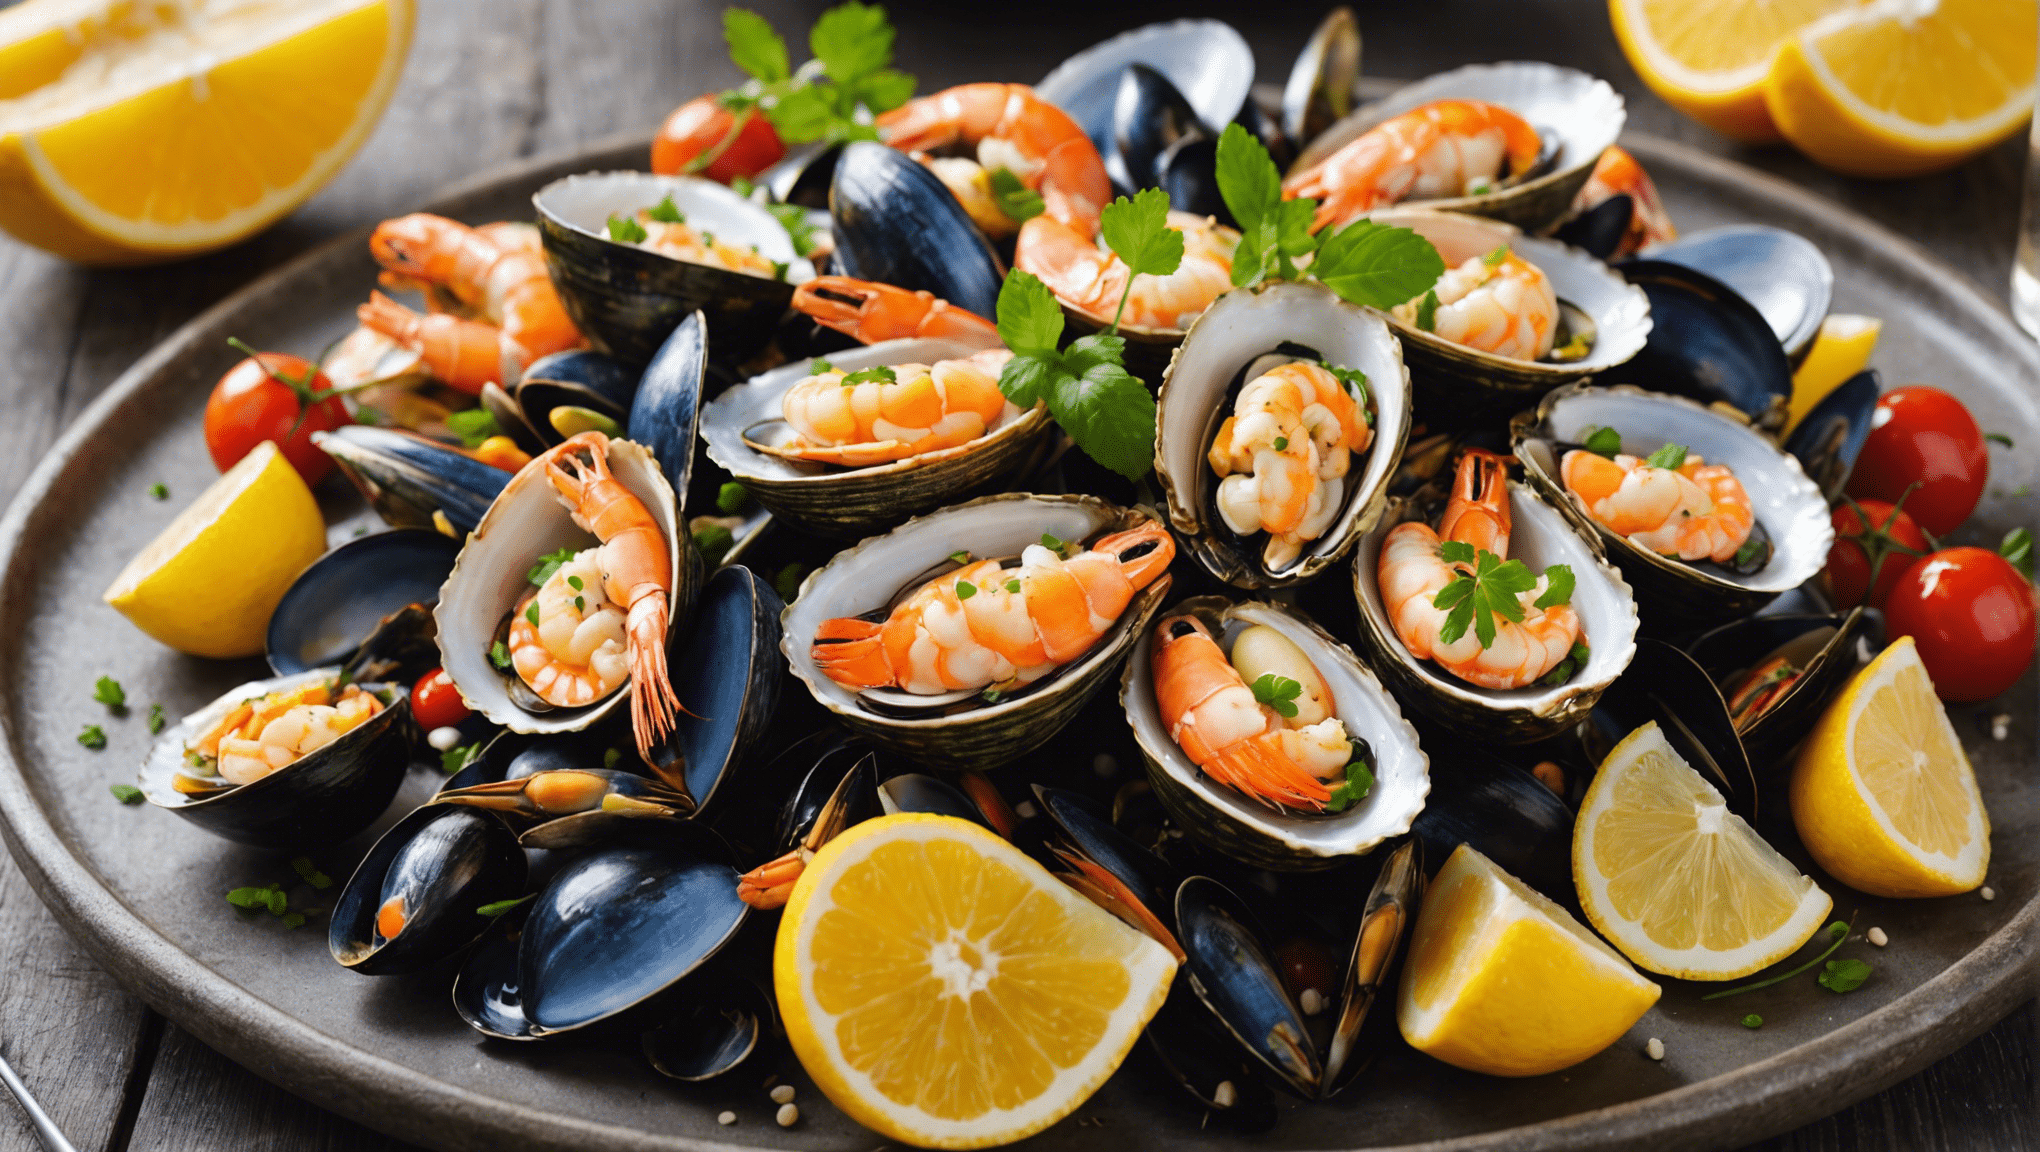 découvrez des recettes savoureuses pour ravir les amateurs de fruits de mer et éveiller vos papilles avec des saveurs délicates et raffinées.